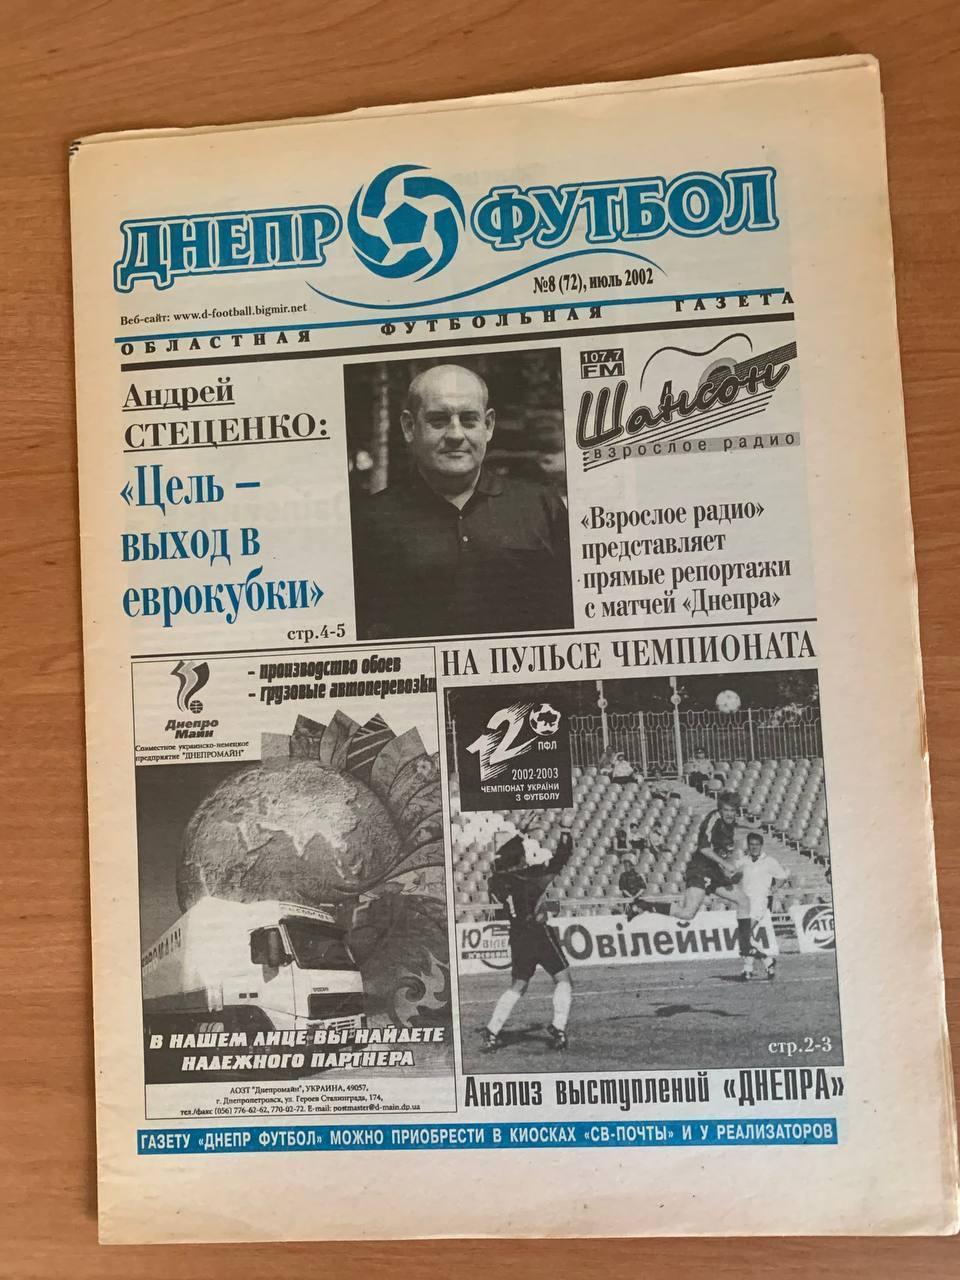 Областная футбольная газета Днепр - Футбол Июль 2002 (№72)